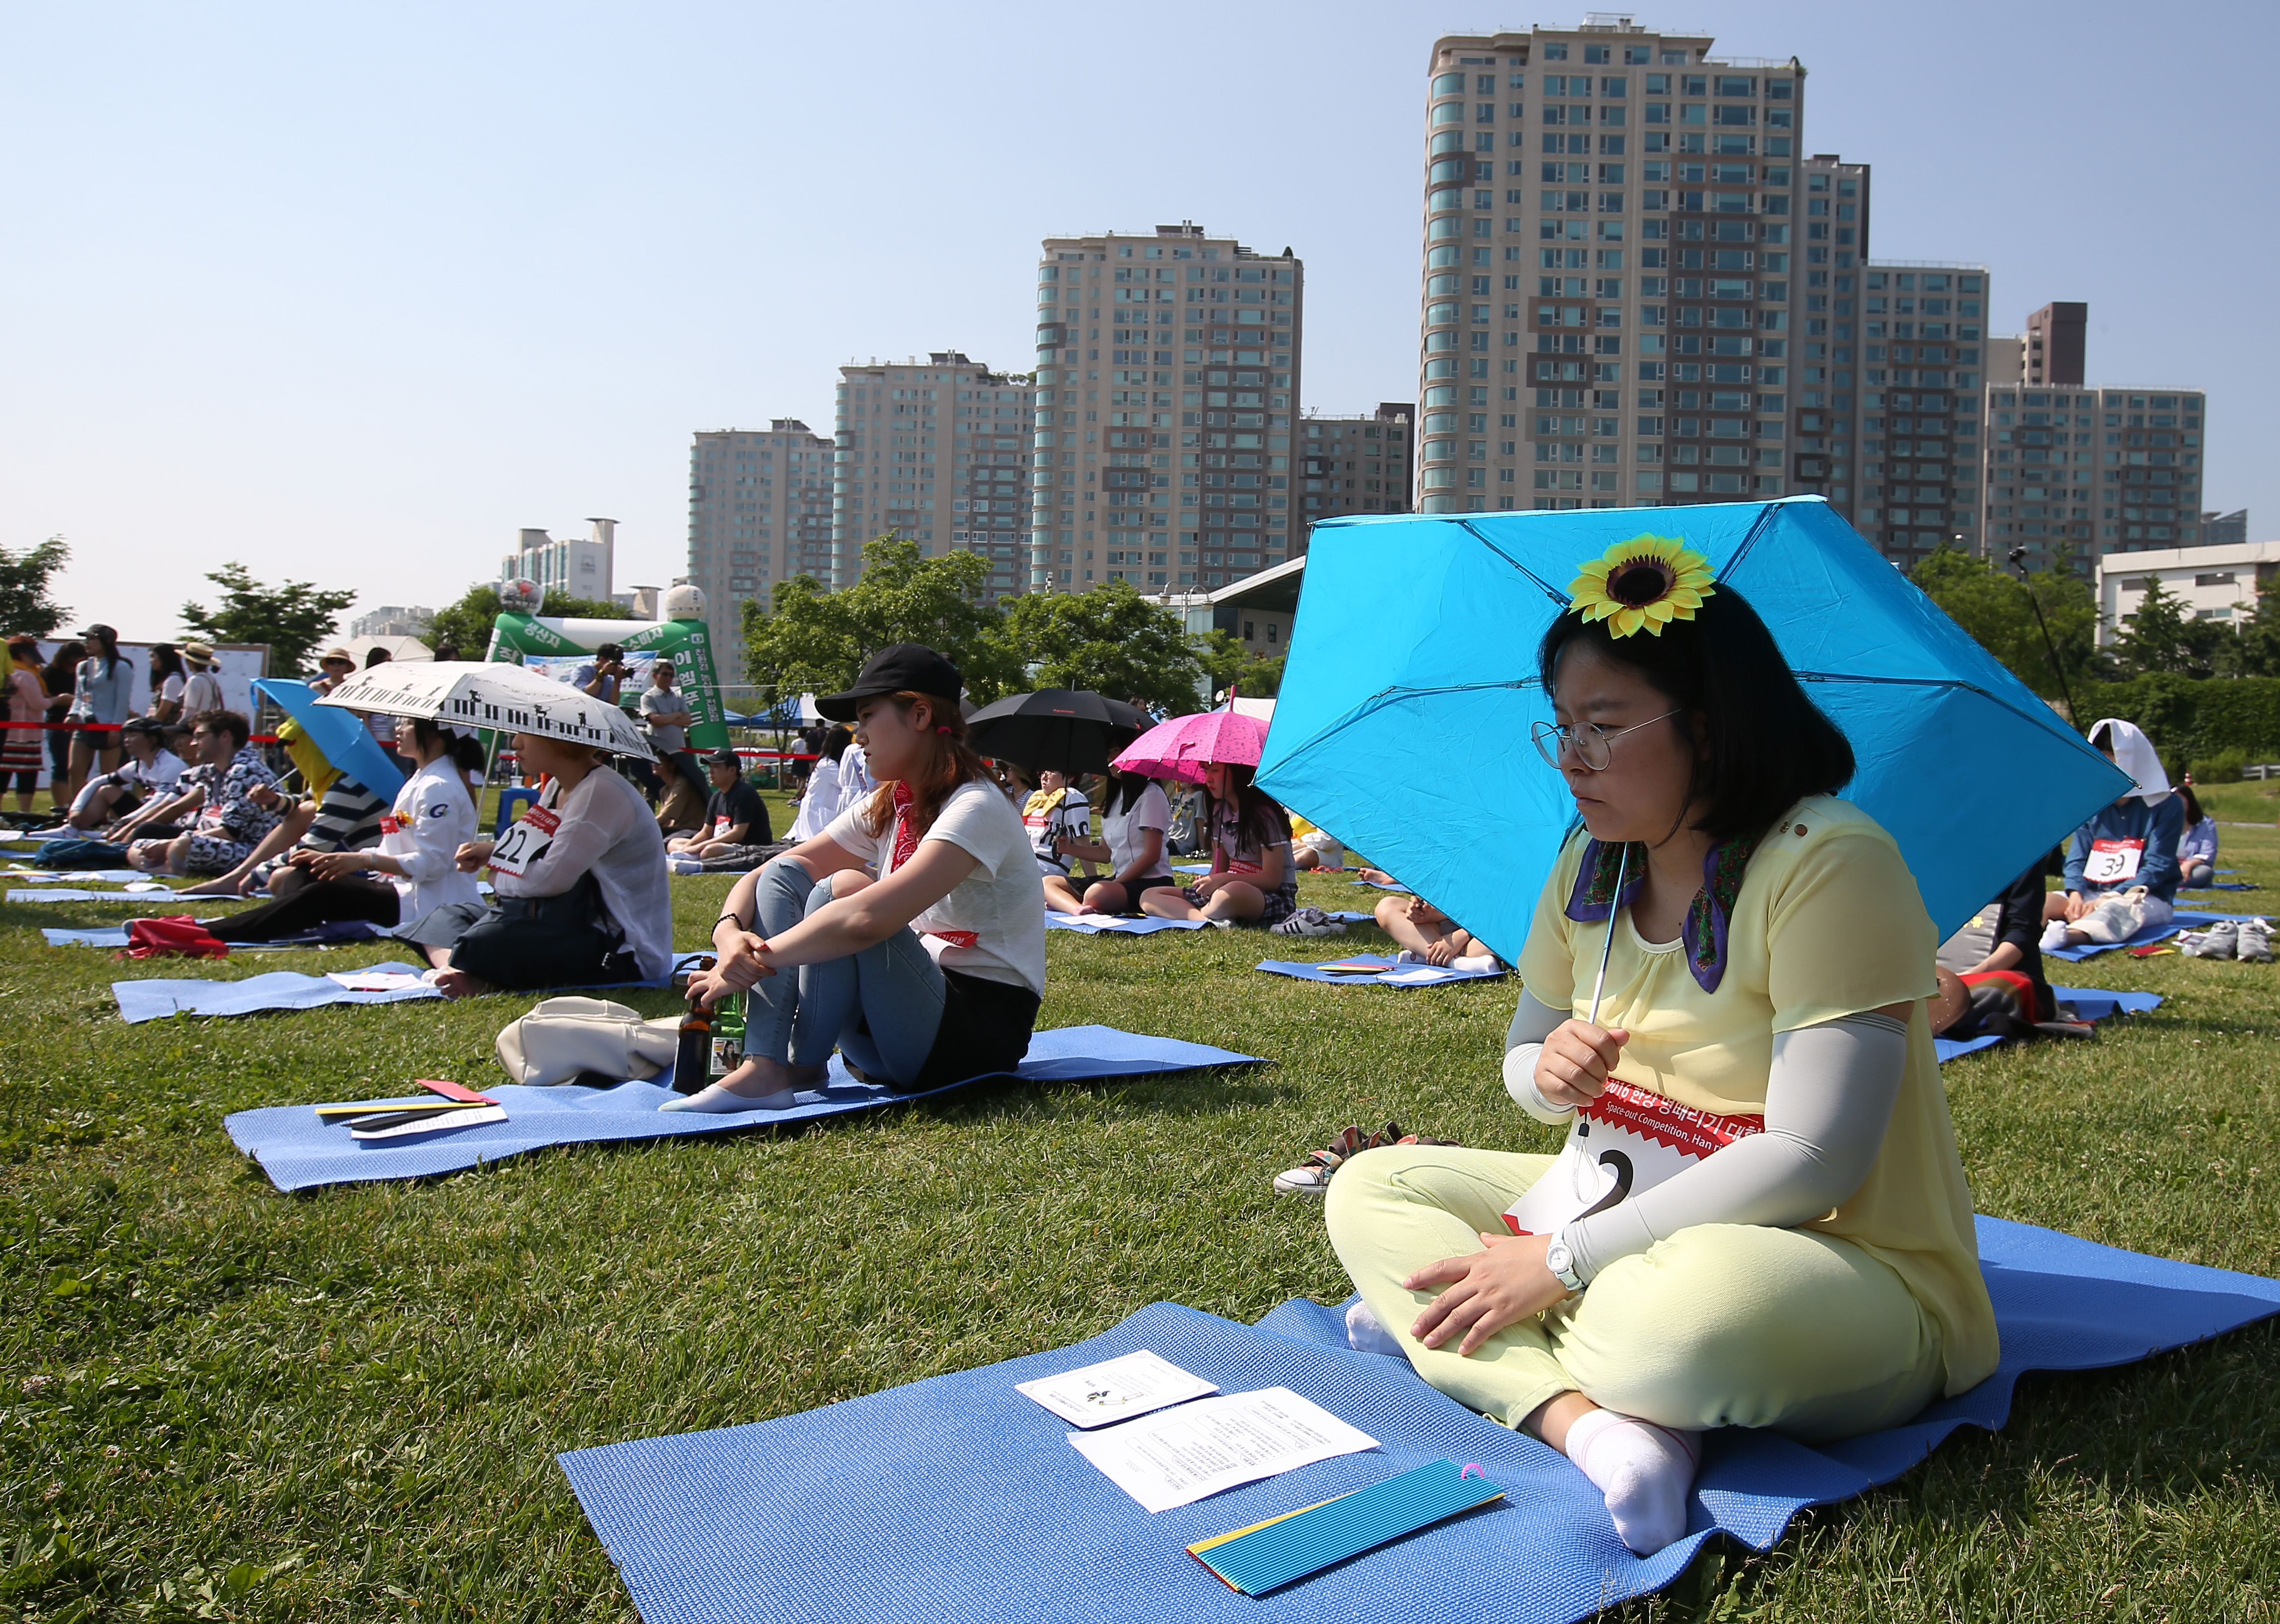 22일 오후 서울 이촌한강공원 청보리밭 일대에서 열린 2016 한강 멍때리기 대회에서 참가자들이 생각에 잠겨있다.